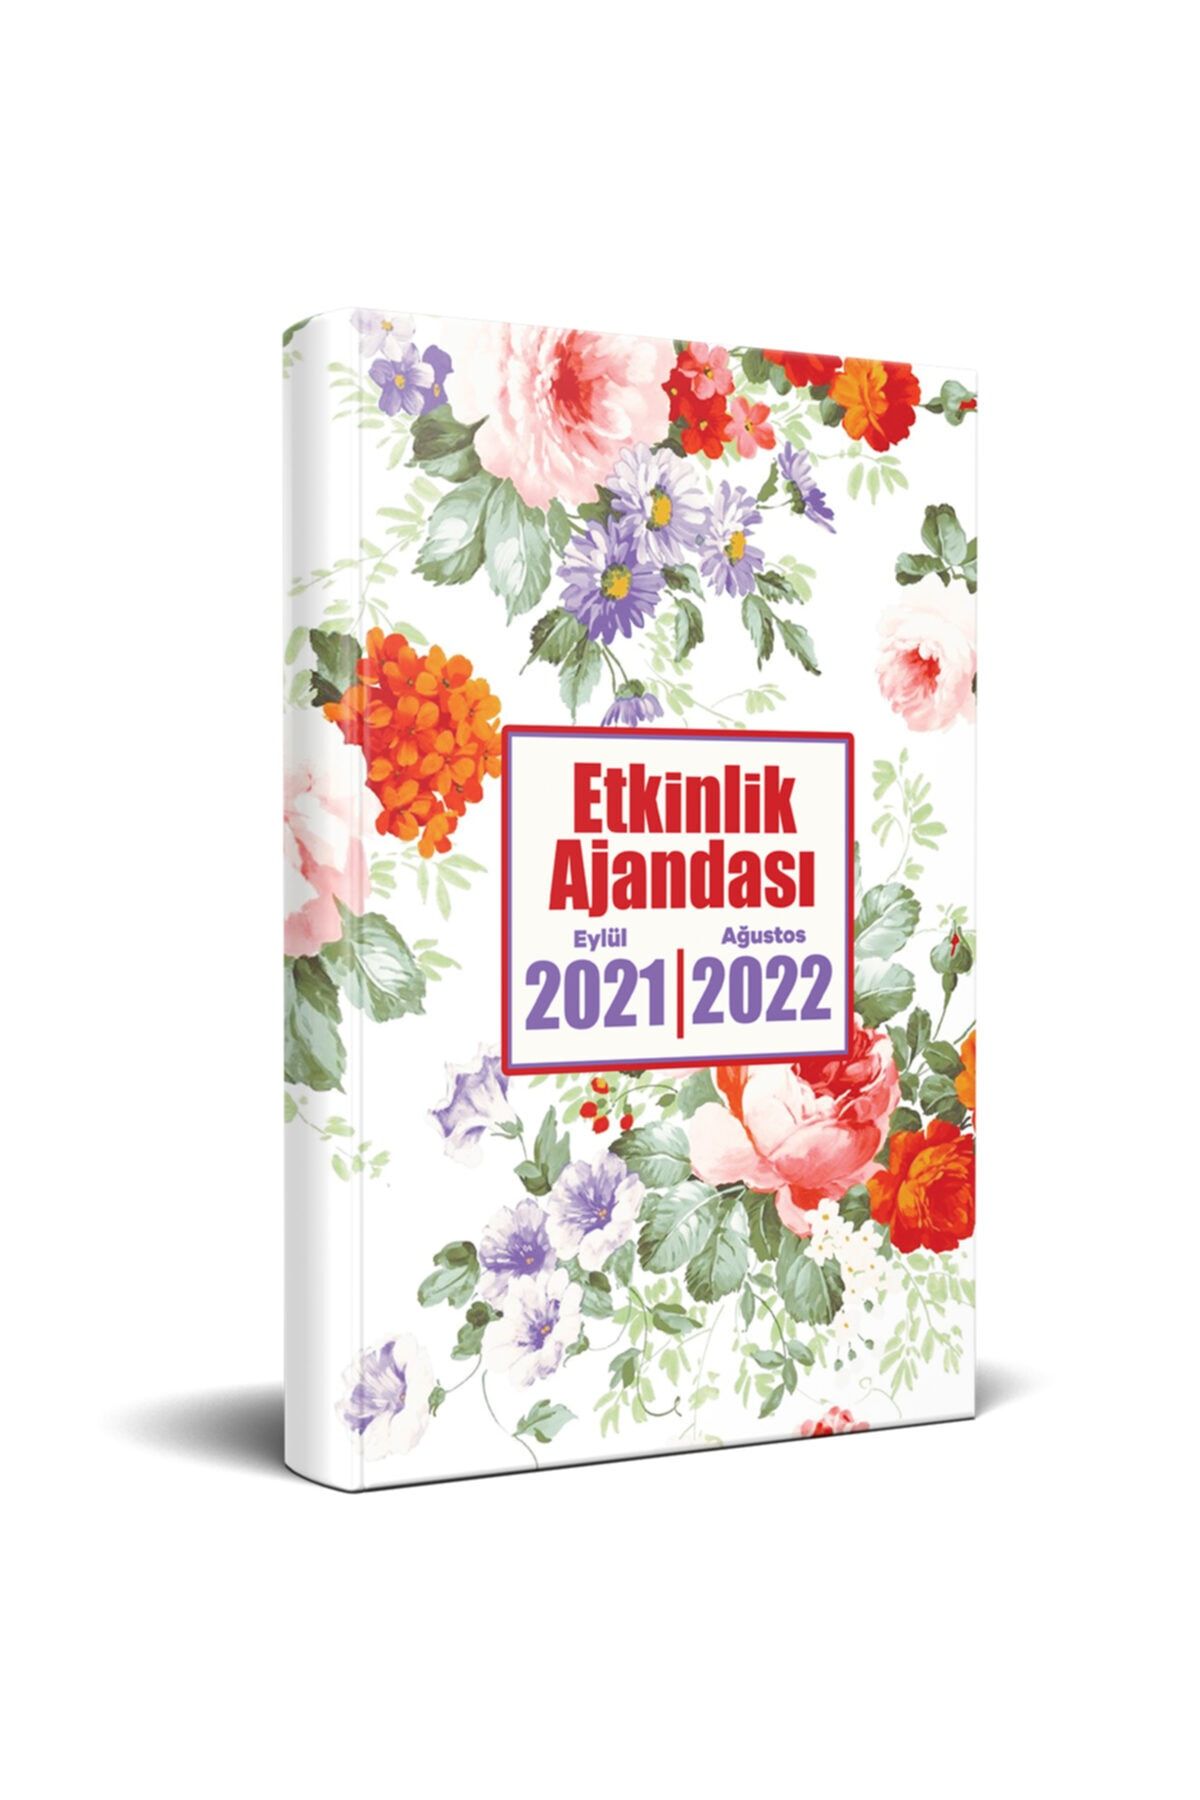 Halk Kitabevi 2021 Eylül-2022 Ağustos Etkinlik Ajandası - Beyaz Düş